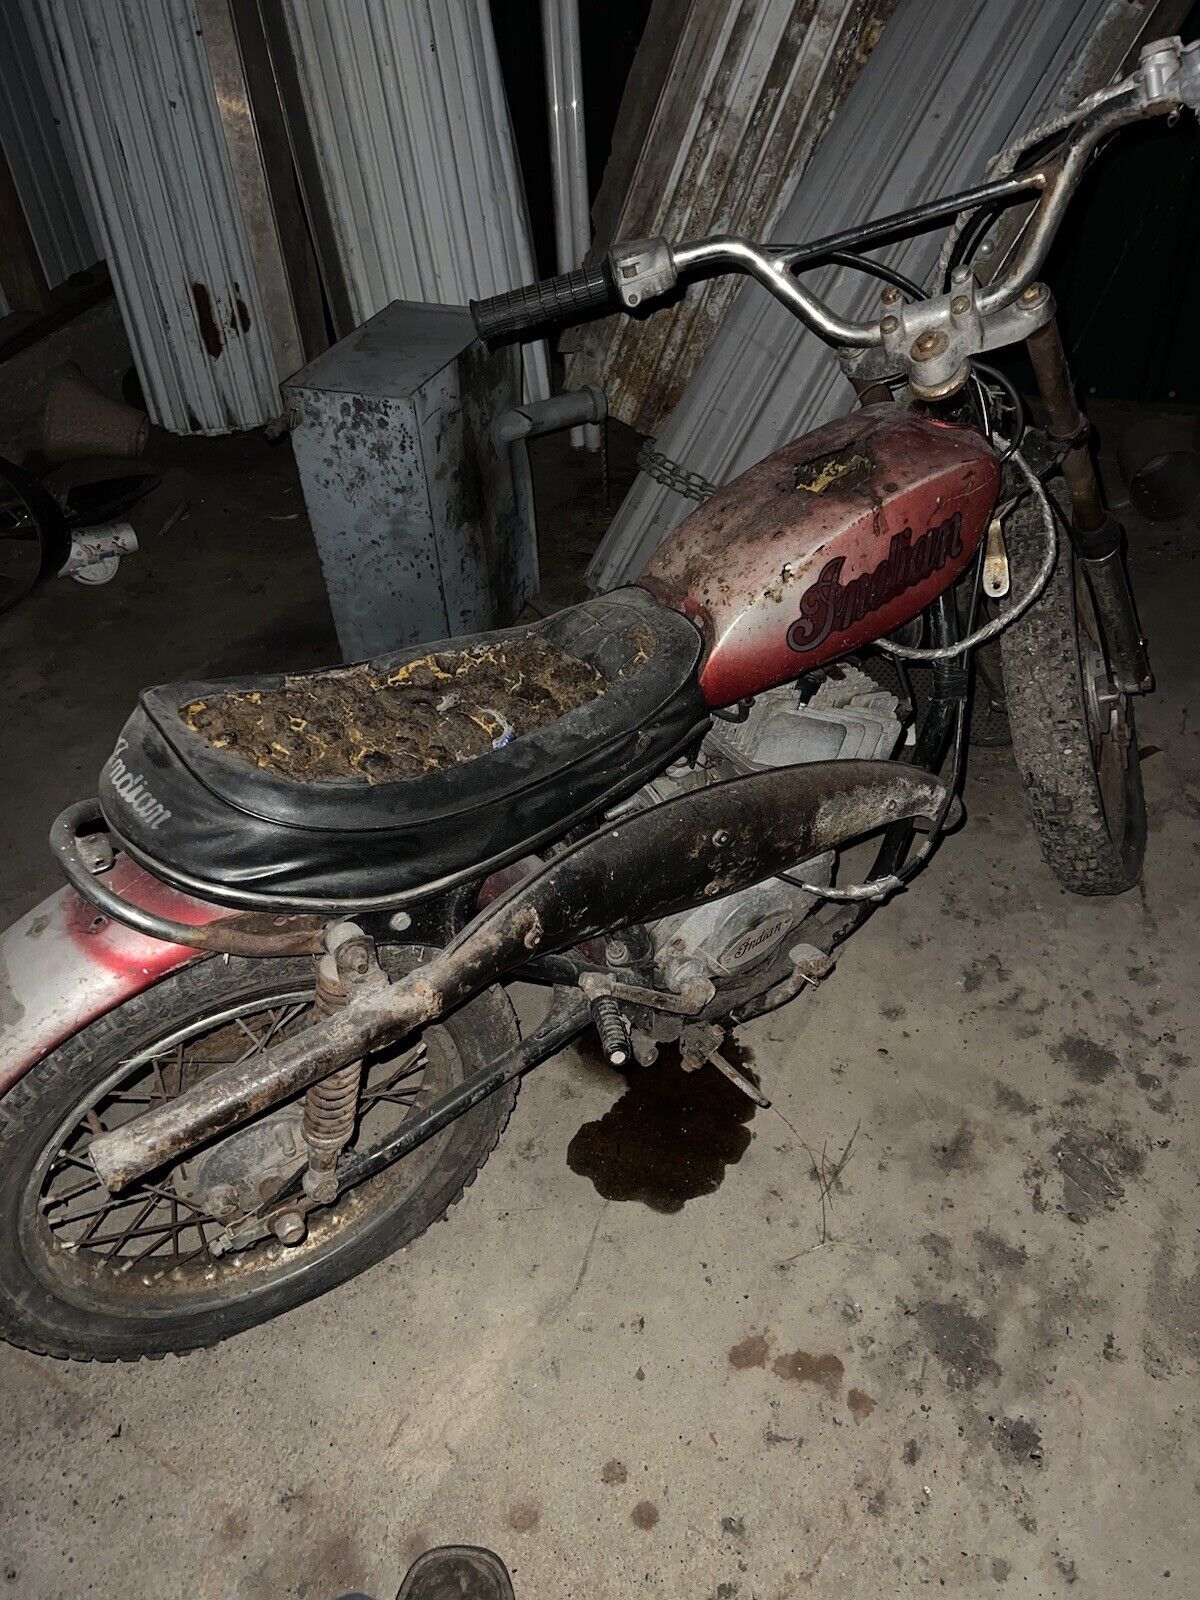 Vintage Indian Dirt Bike